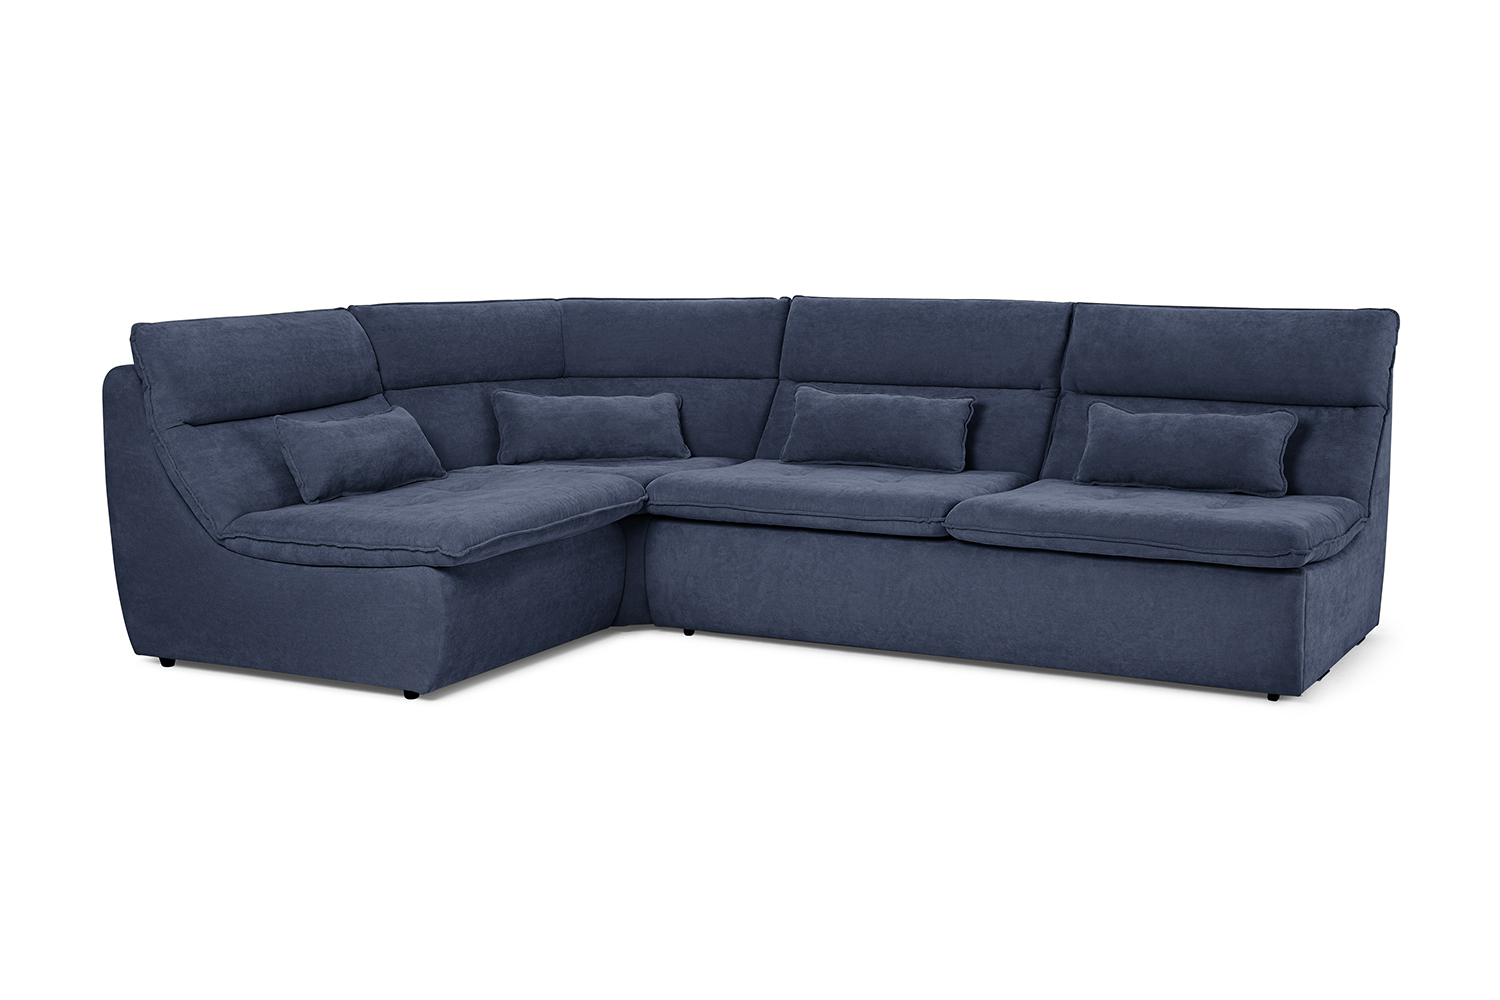 Угловой диван-кровать Ривьера